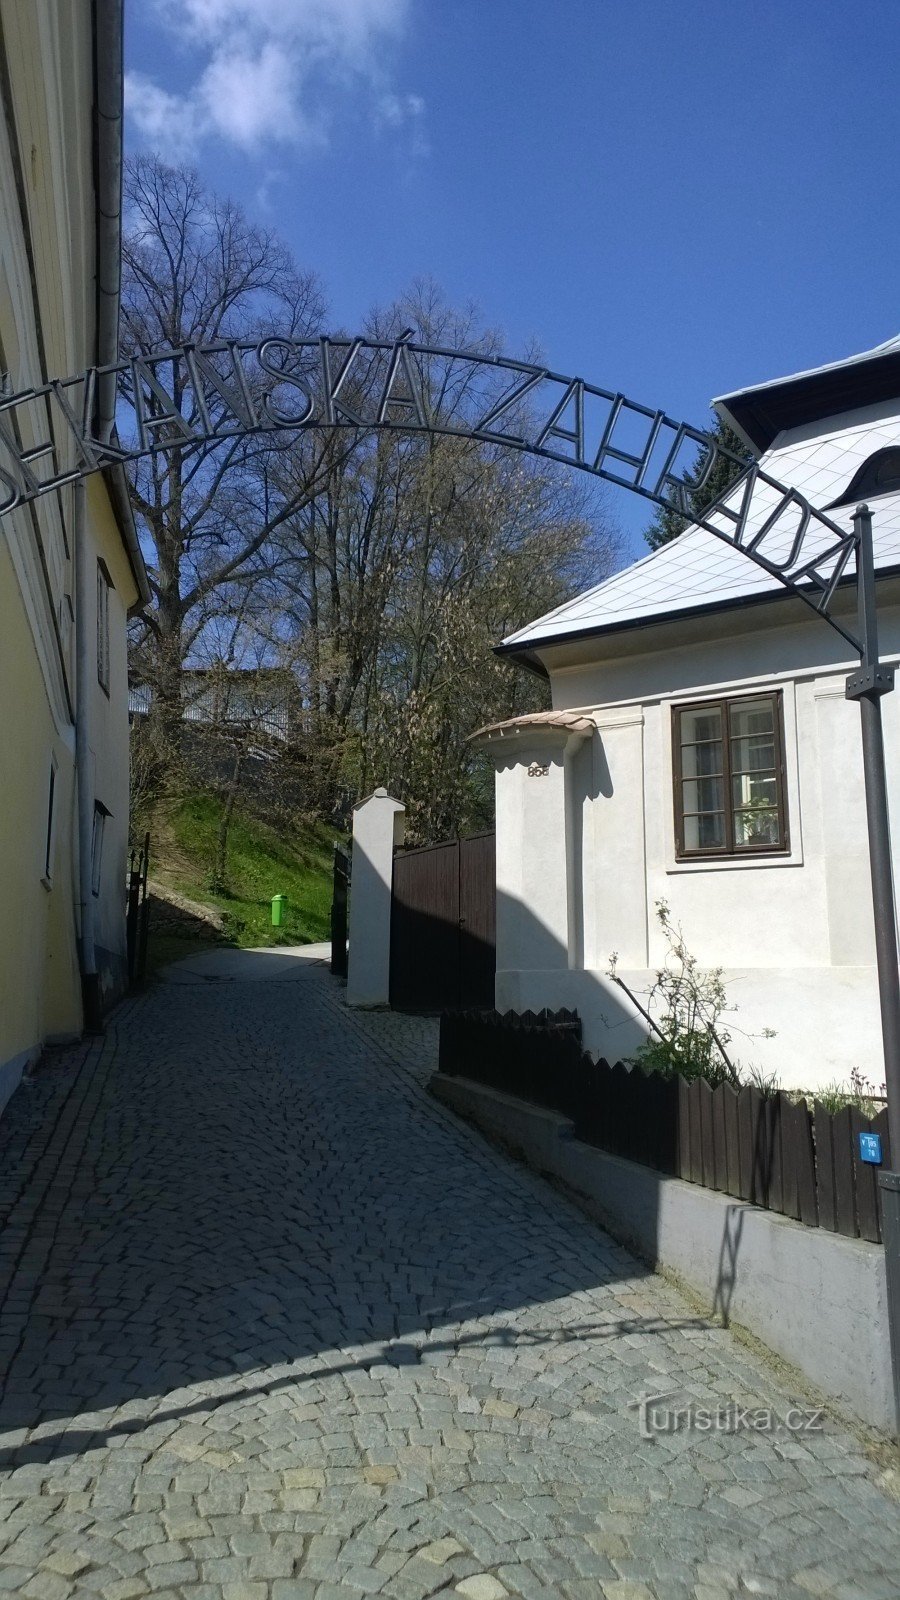 Grădina decanului din Pelhřimov.